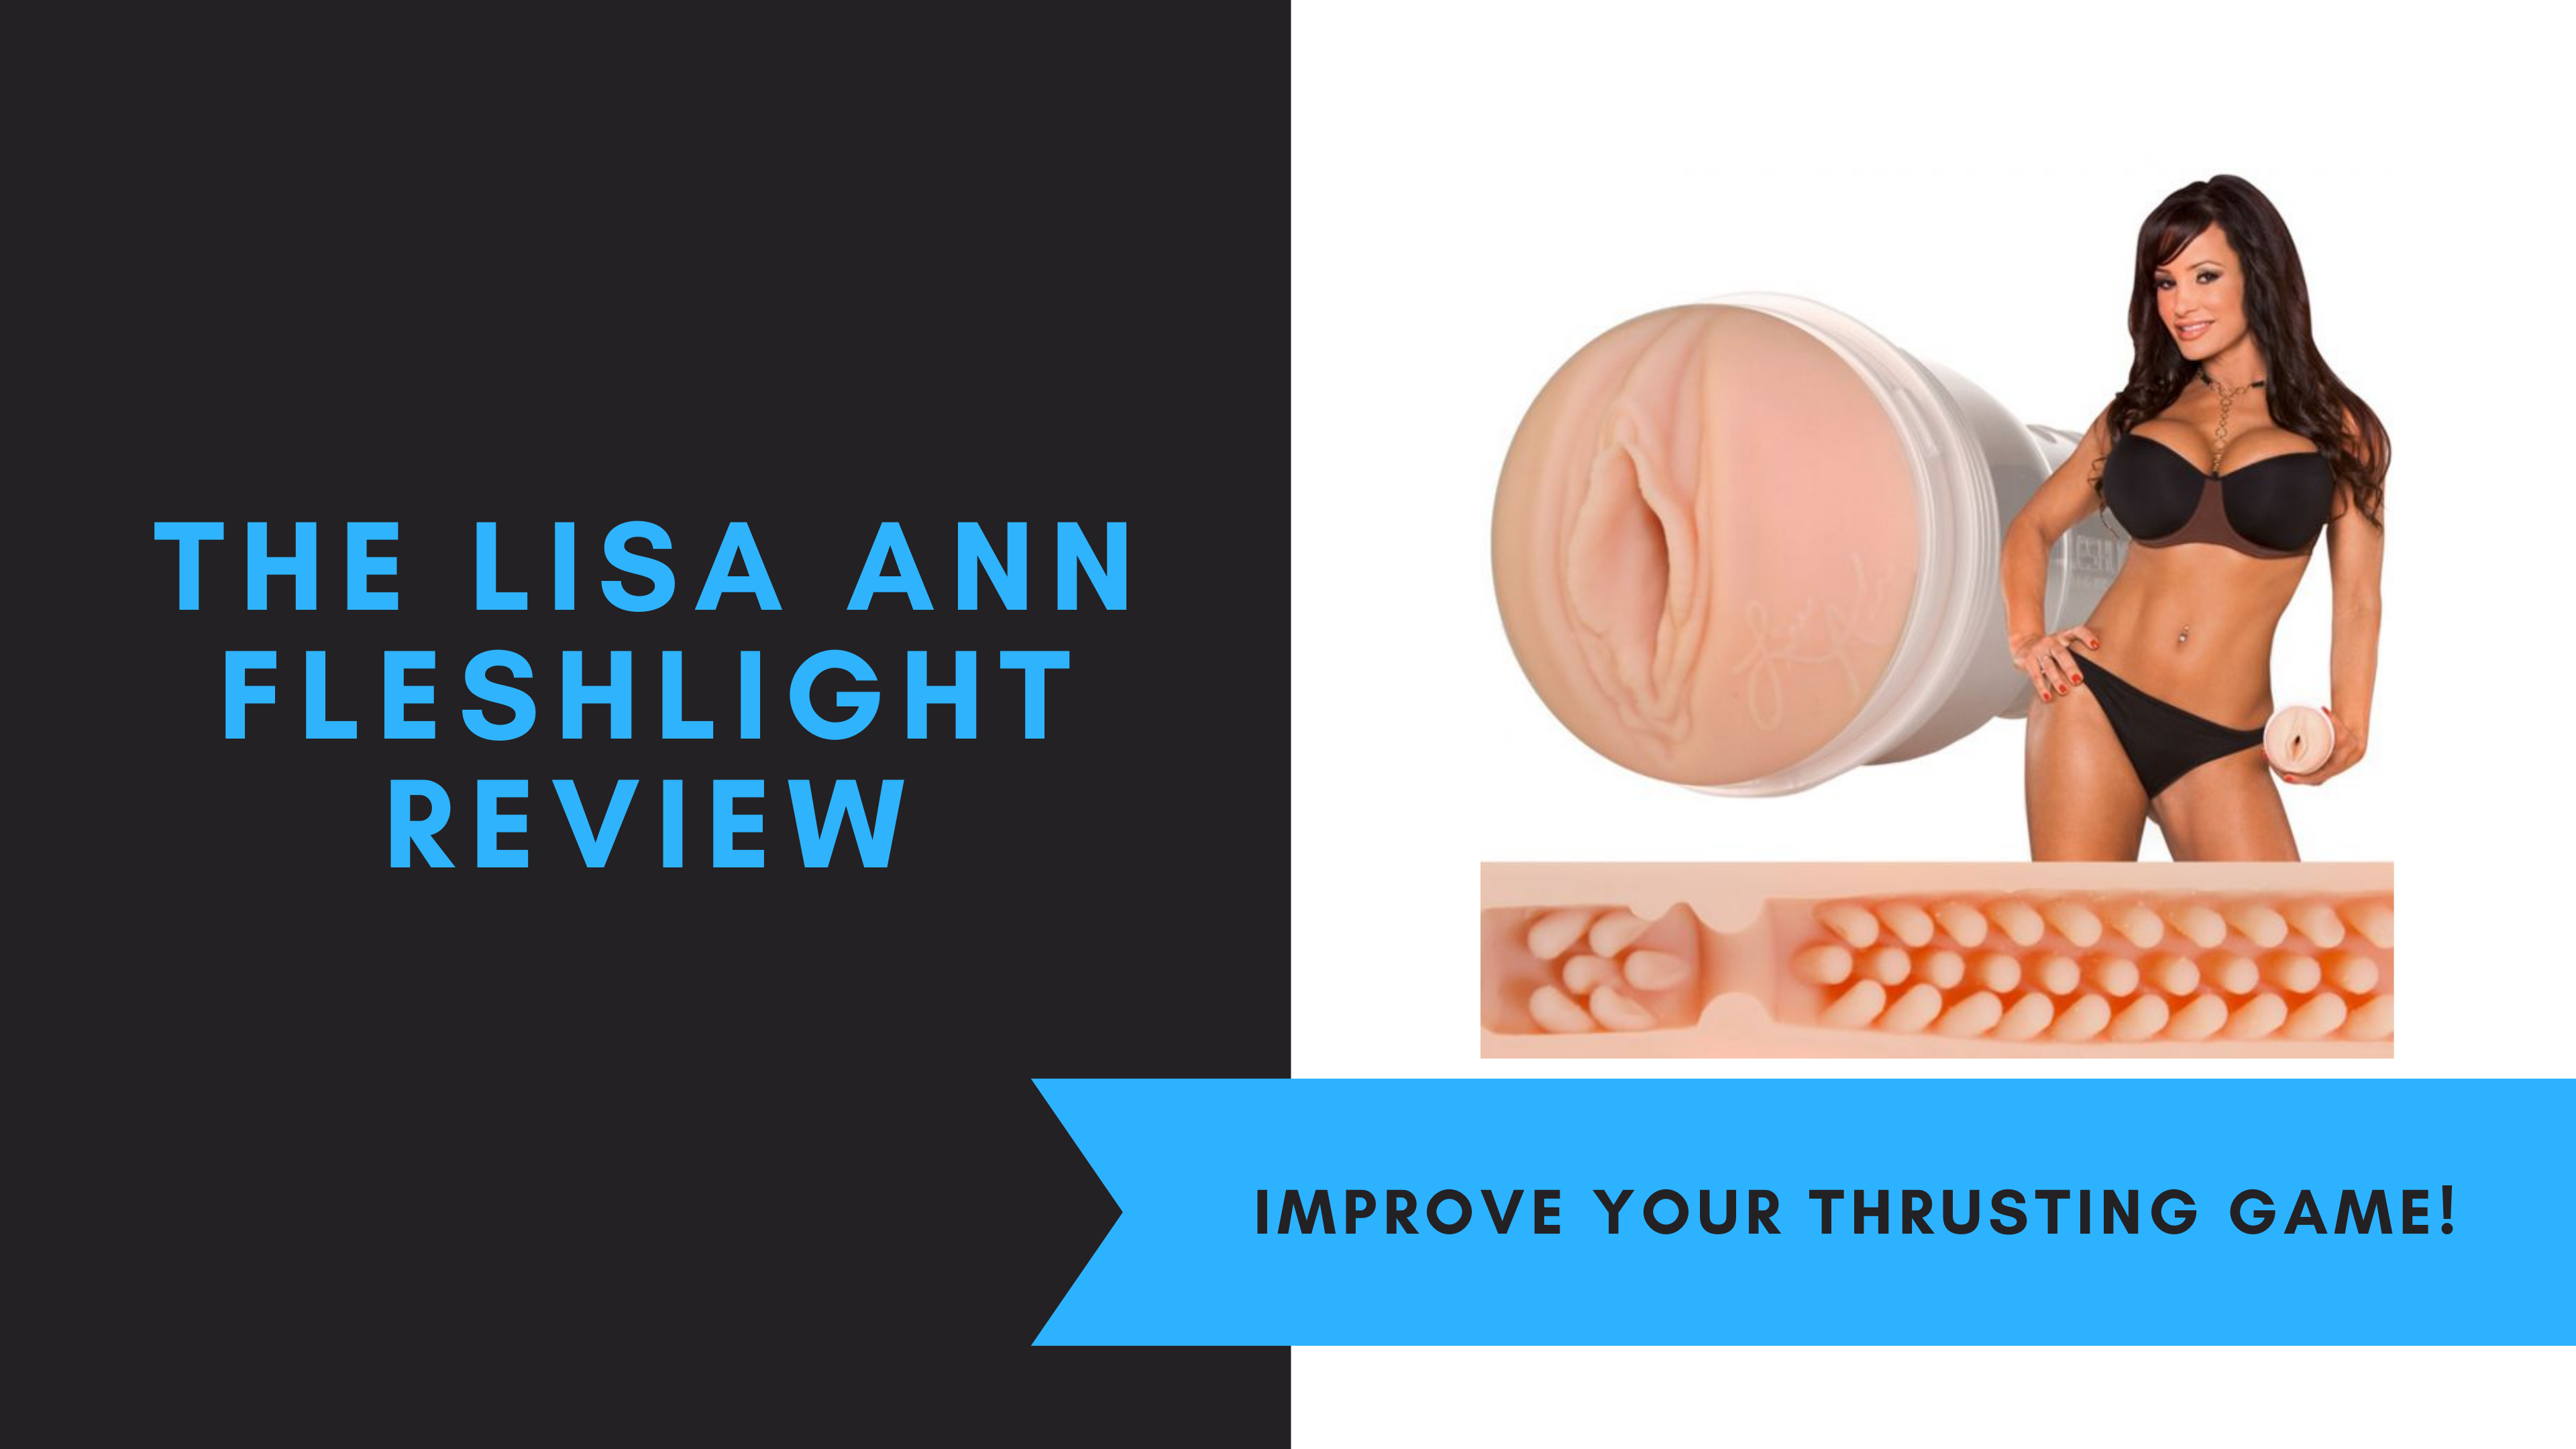 The Lisa Ann Fleshlight Review